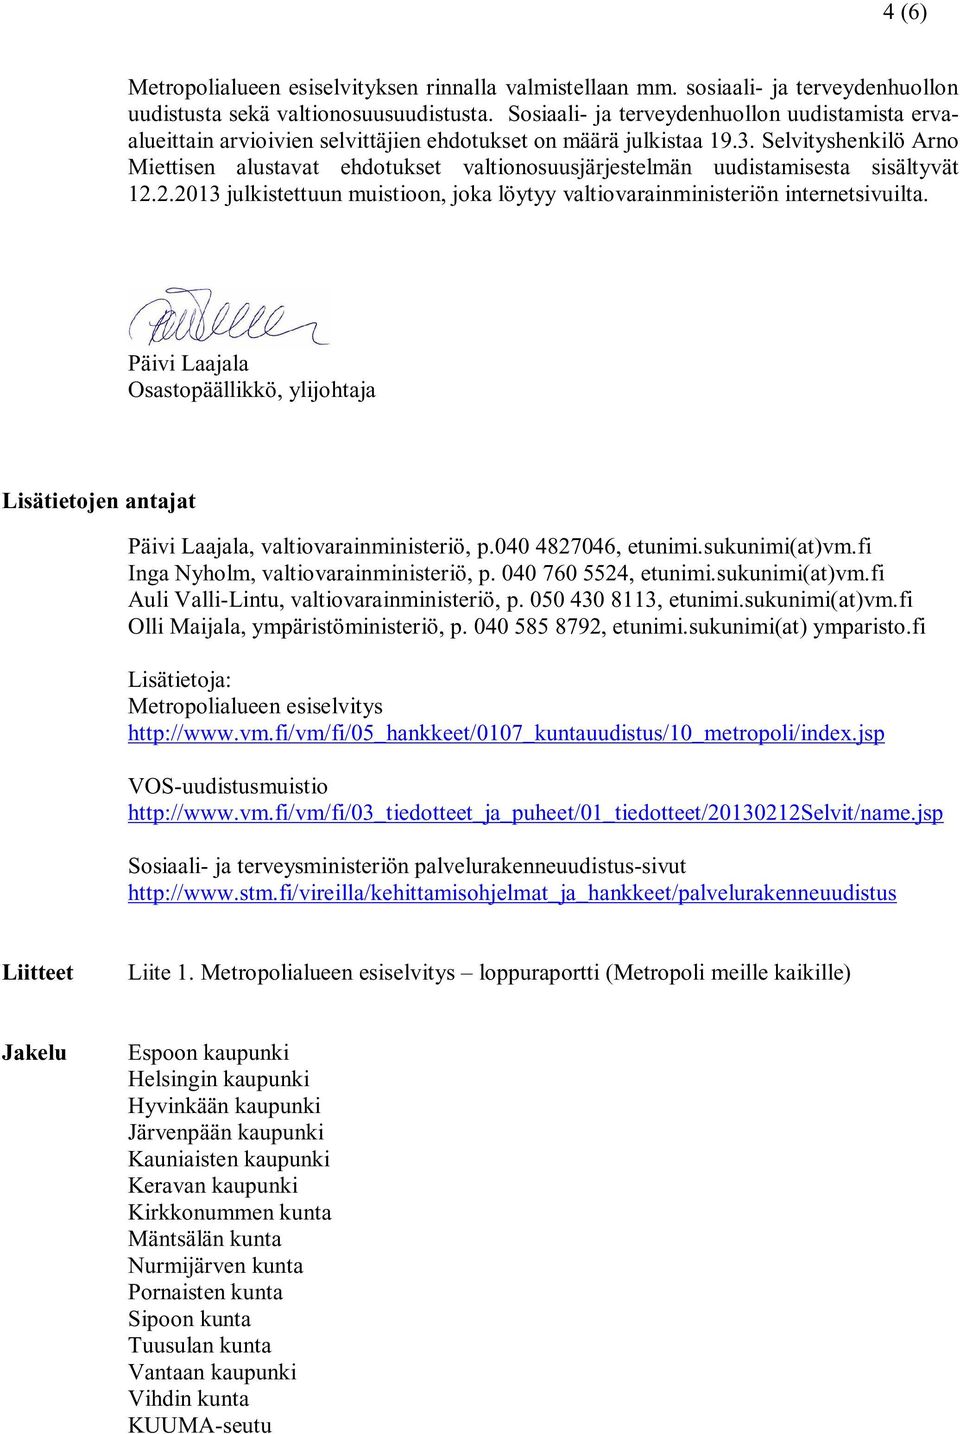 Selvityshenkilö Arno Miettisen alustavat ehdotukset valtionosuusjärjestelmän uudistamisesta sisältyvät 12.2.2013 julkistettuun muistioon, joka löytyy valtiovarainministeriön internetsivuilta.